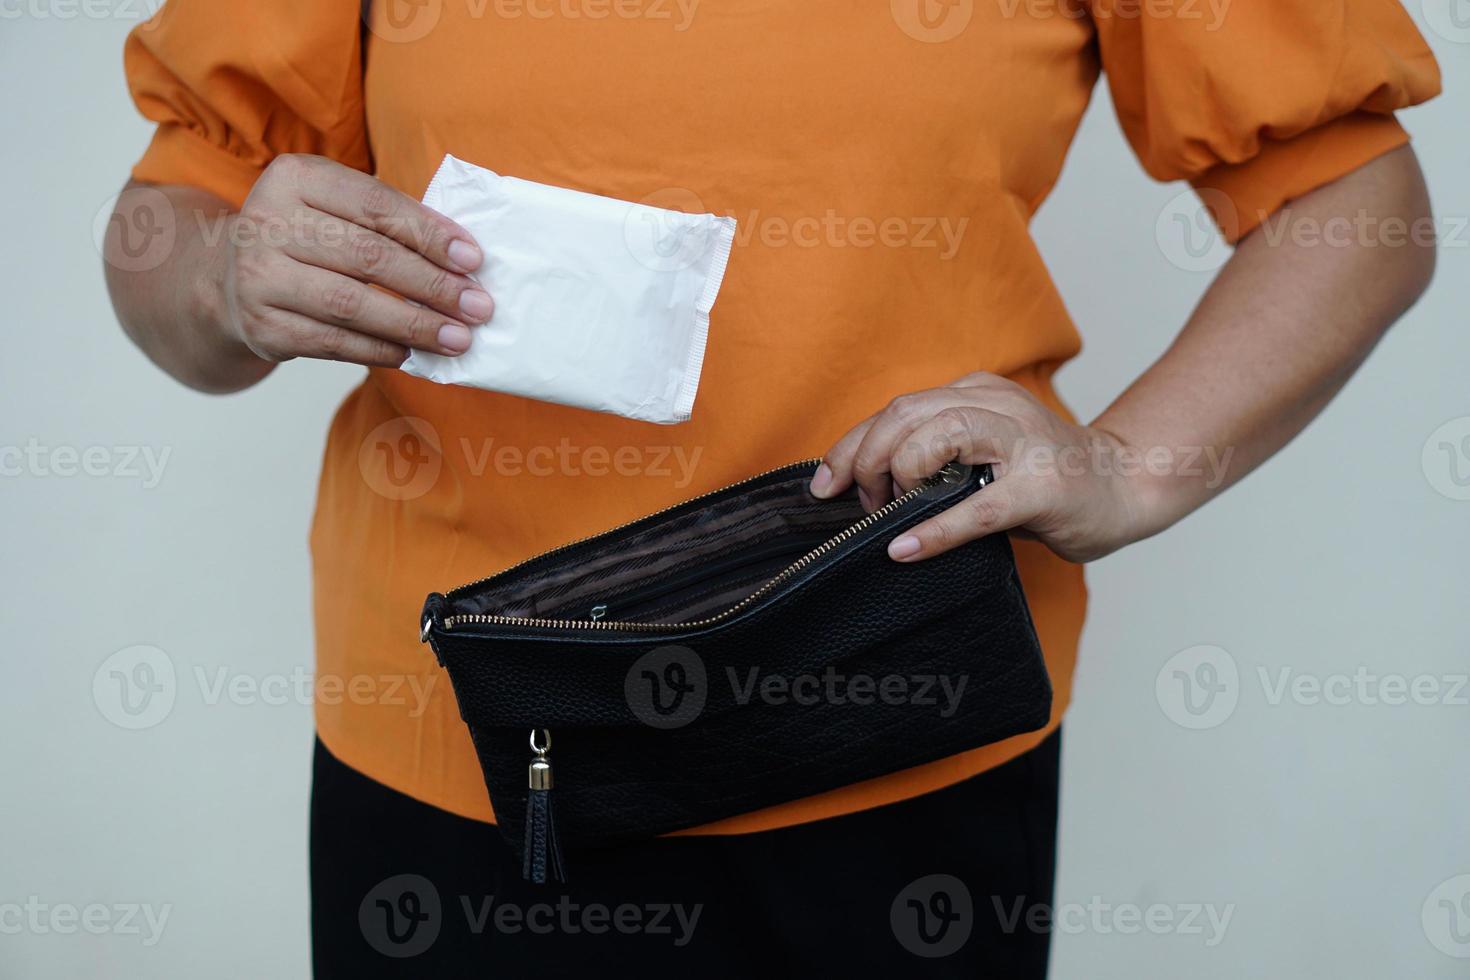 Closeup Frau hält Damenbinde für die Menstruation, um sie vor dem Ausgehen in die Tasche zu stecken. Konzept, Damenhygieneprodukt für den Tag der Periode. Frau im Gesundheitswesen. monatliche Intimpflege. foto